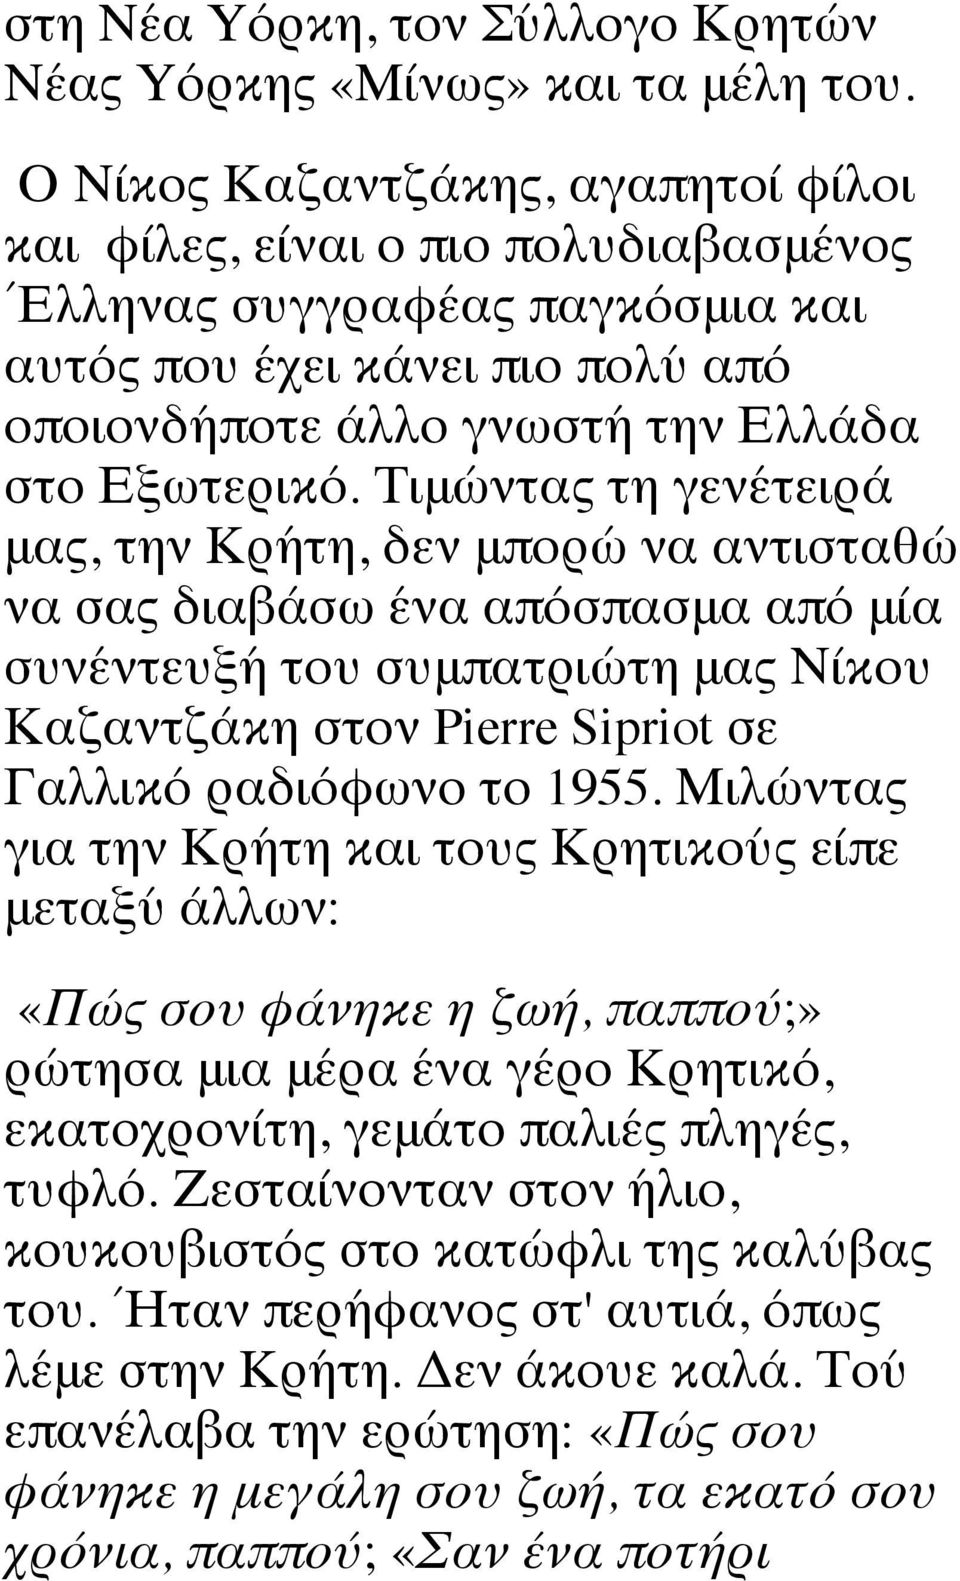 Τιμώντας τη γενέτειρά μας, την Κρήτη, δεν μπορώ να αντισταθώ να σας διαβάσω ένα απόσπασμα από μία συνέντευξή του συμπατριώτη μας Νίκου Καζαντζάκη στον Pierre Sipriot σε Γαλλικό ραδιόφωνο το 1955.